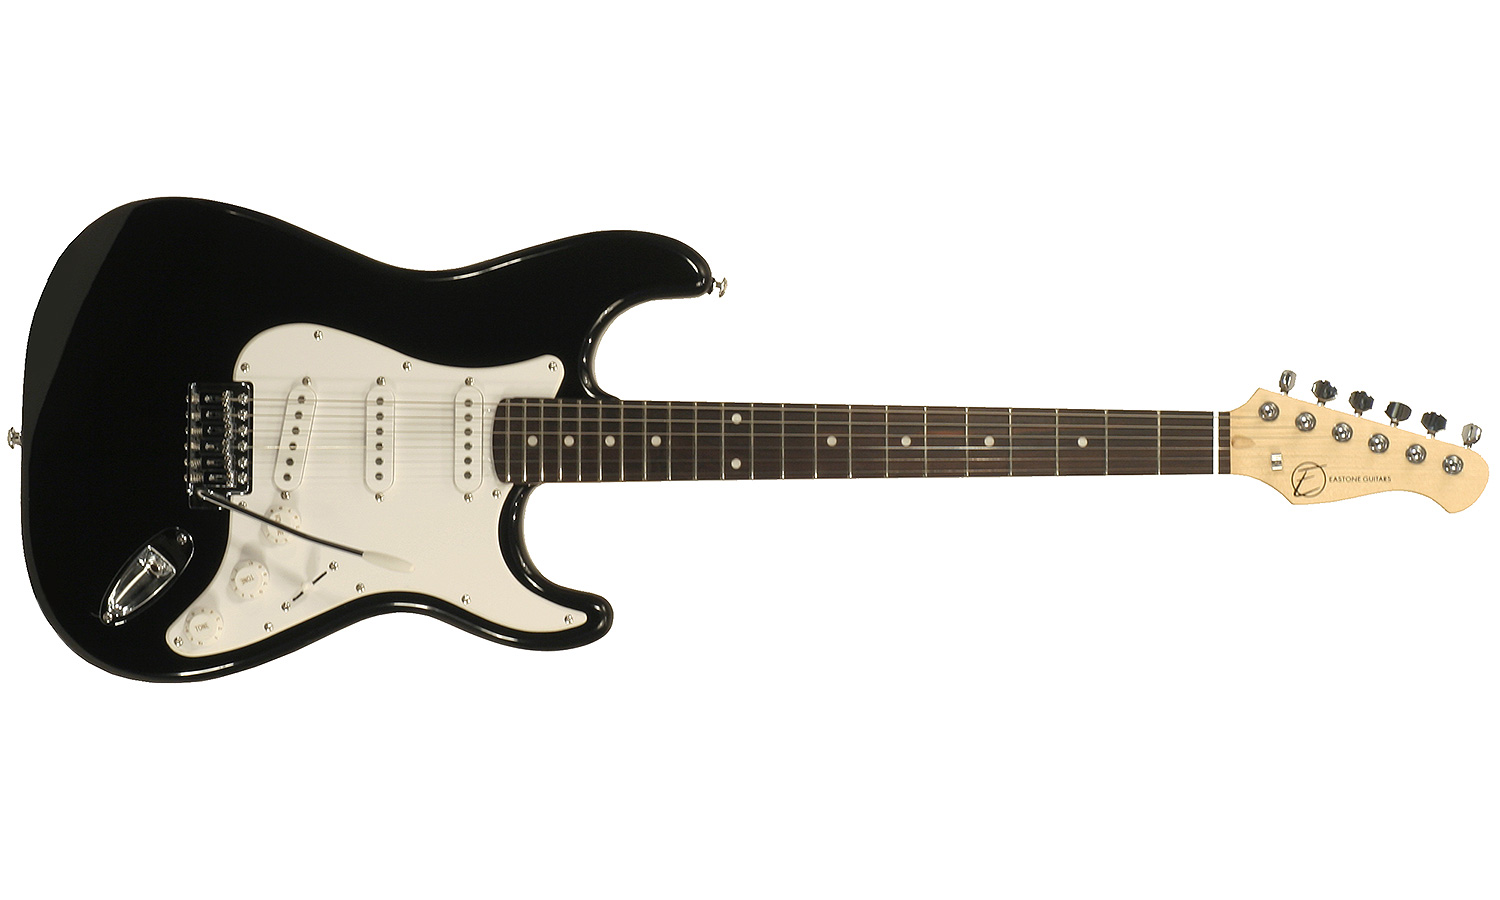 Eastone Str70-blk 3s Pur - Black - Str shape electric guitar - Variation 1